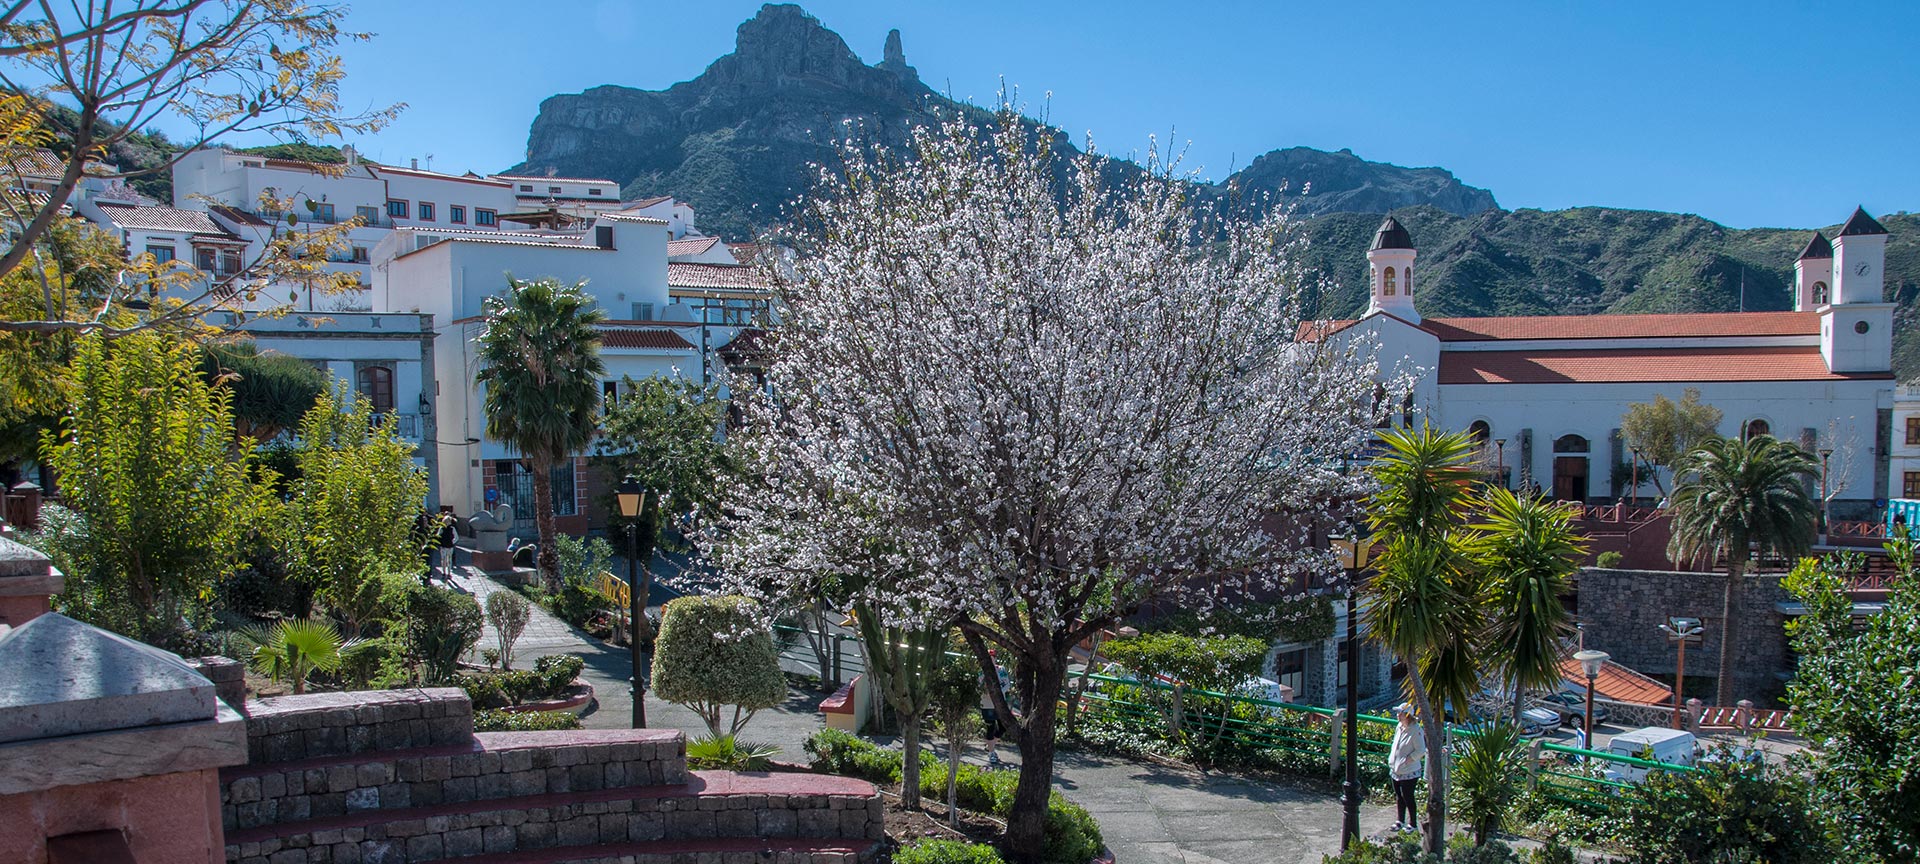 Flowering trees blooming in Tejeda, Gran Canaria